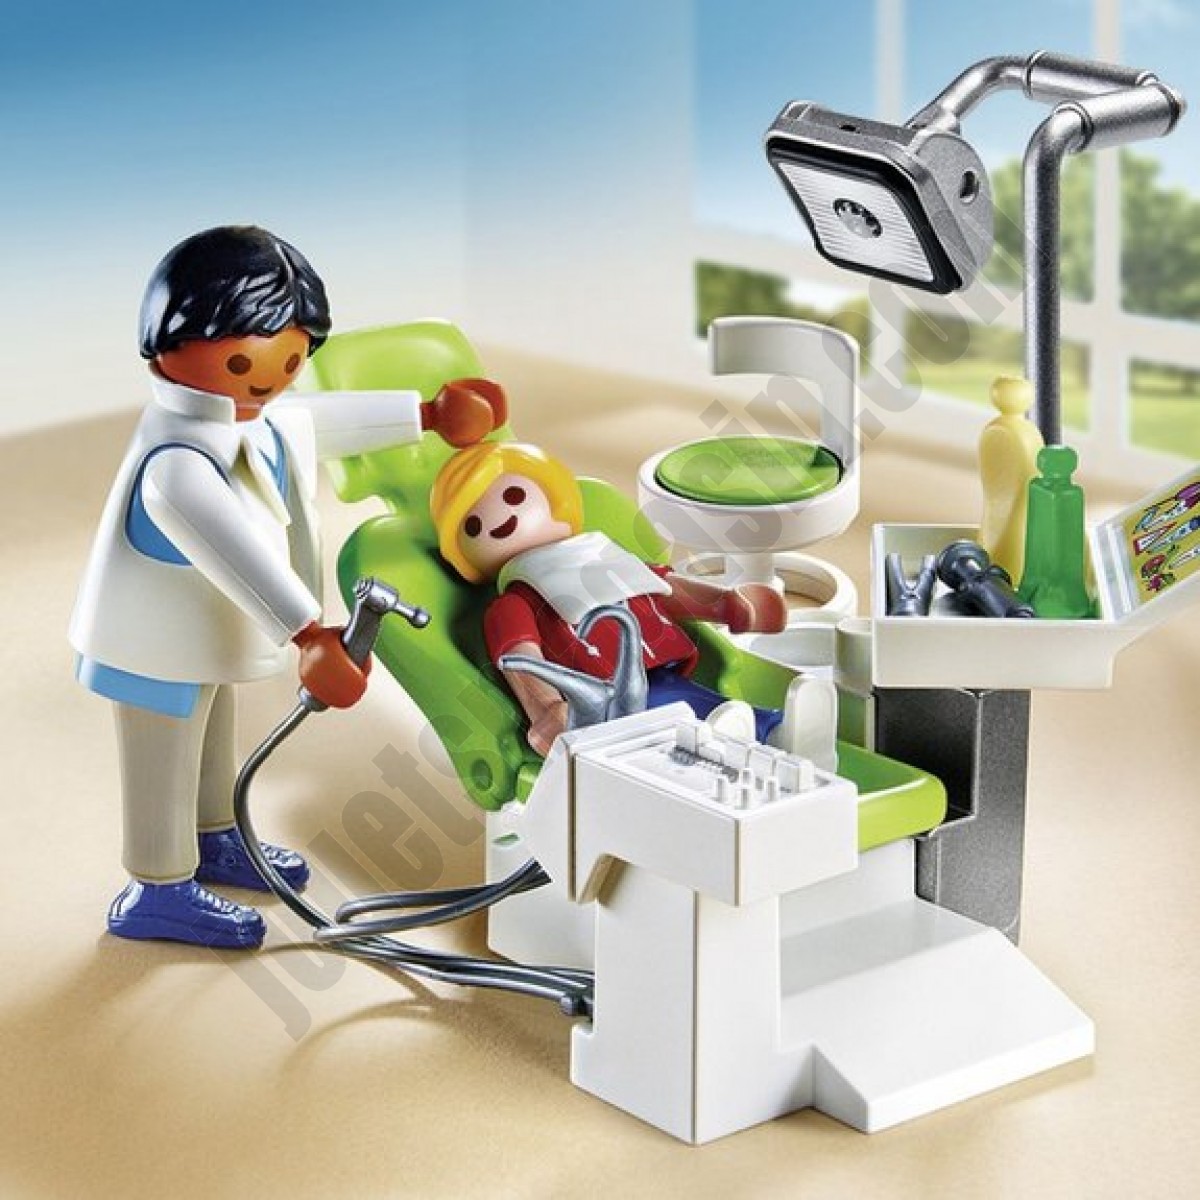 Cabinet de dentiste Playmobil City Life - 6662 ◆◆◆ Nouveau - Cabinet de dentiste Playmobil City Life - 6662 ◆◆◆ Nouveau